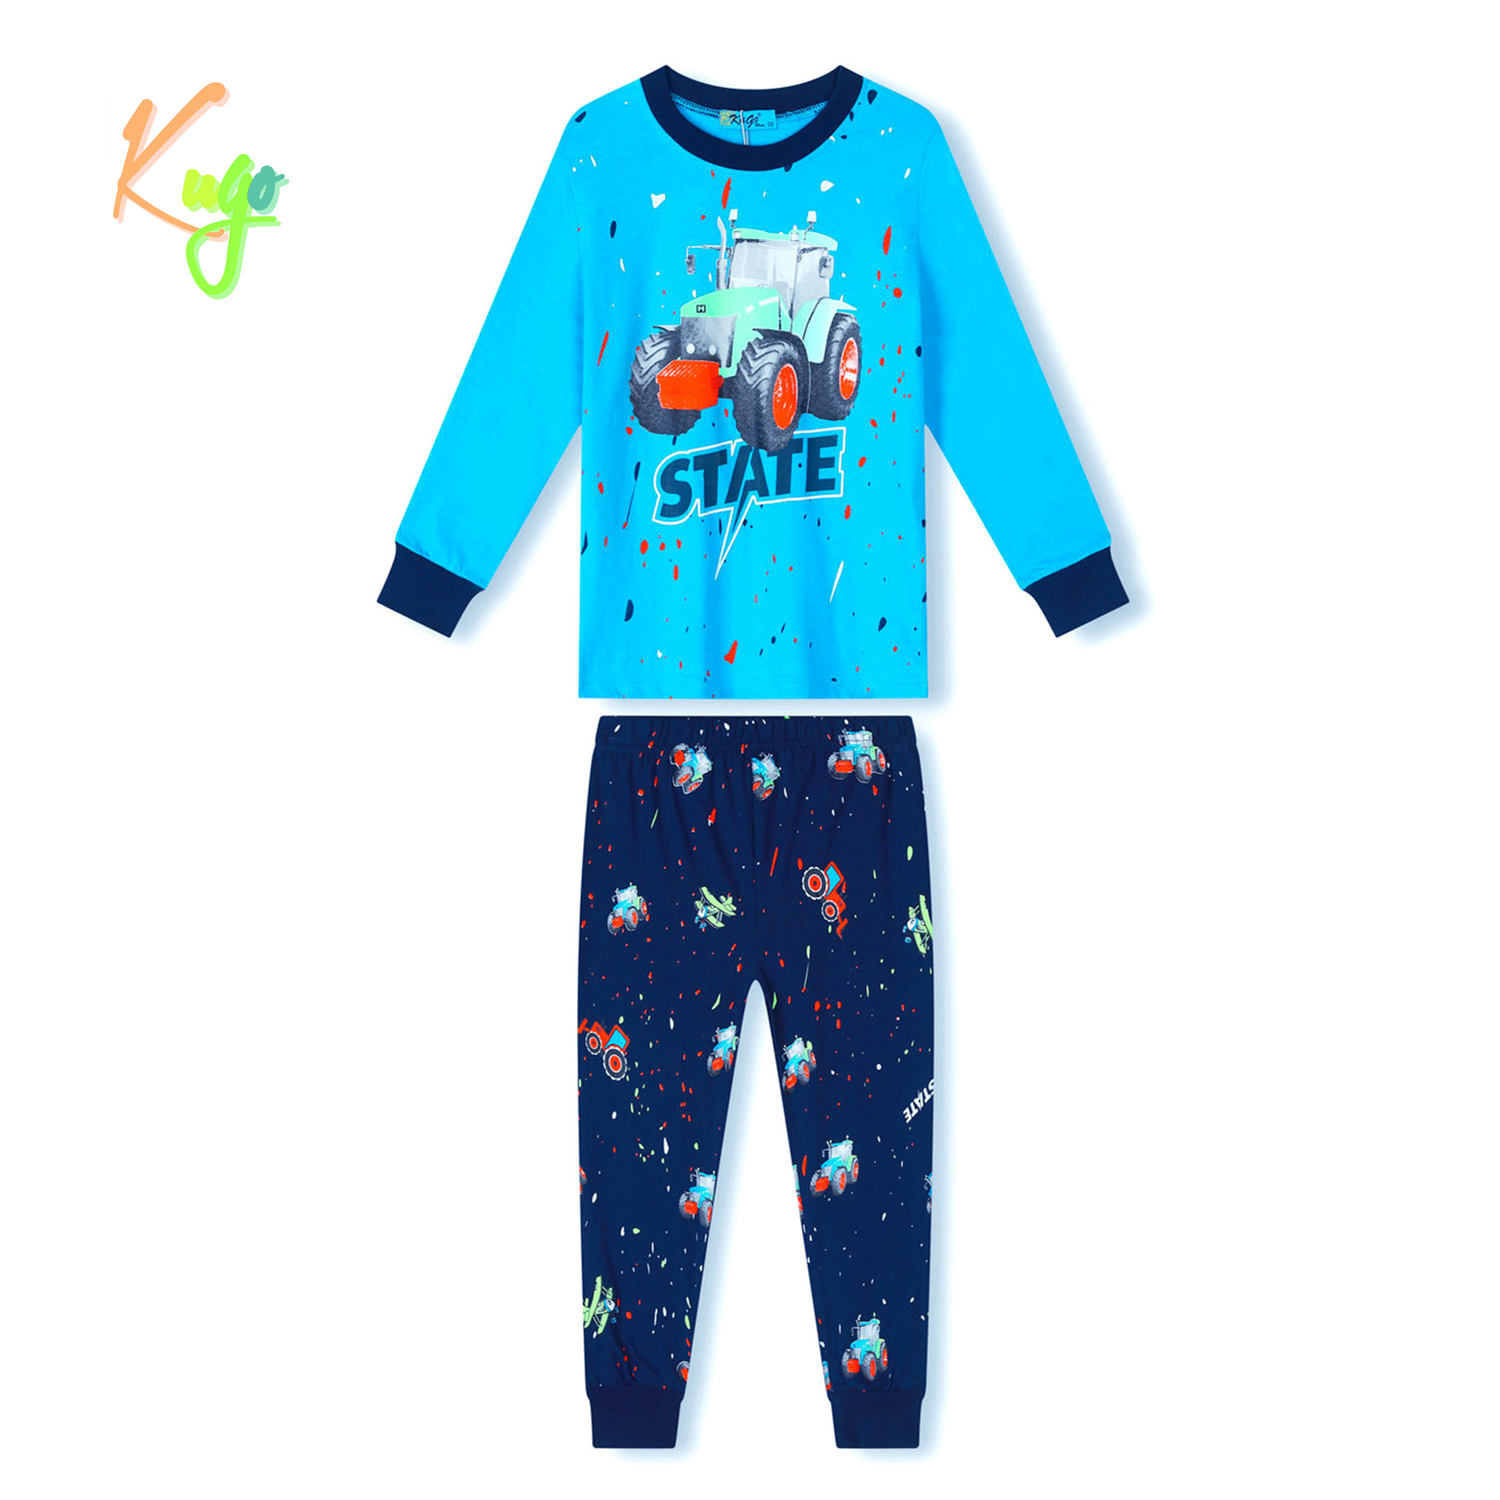 Chlapecké pyžamo - KUGO MP3779, světlonce modrá Barva: Modrá, Velikost: 128